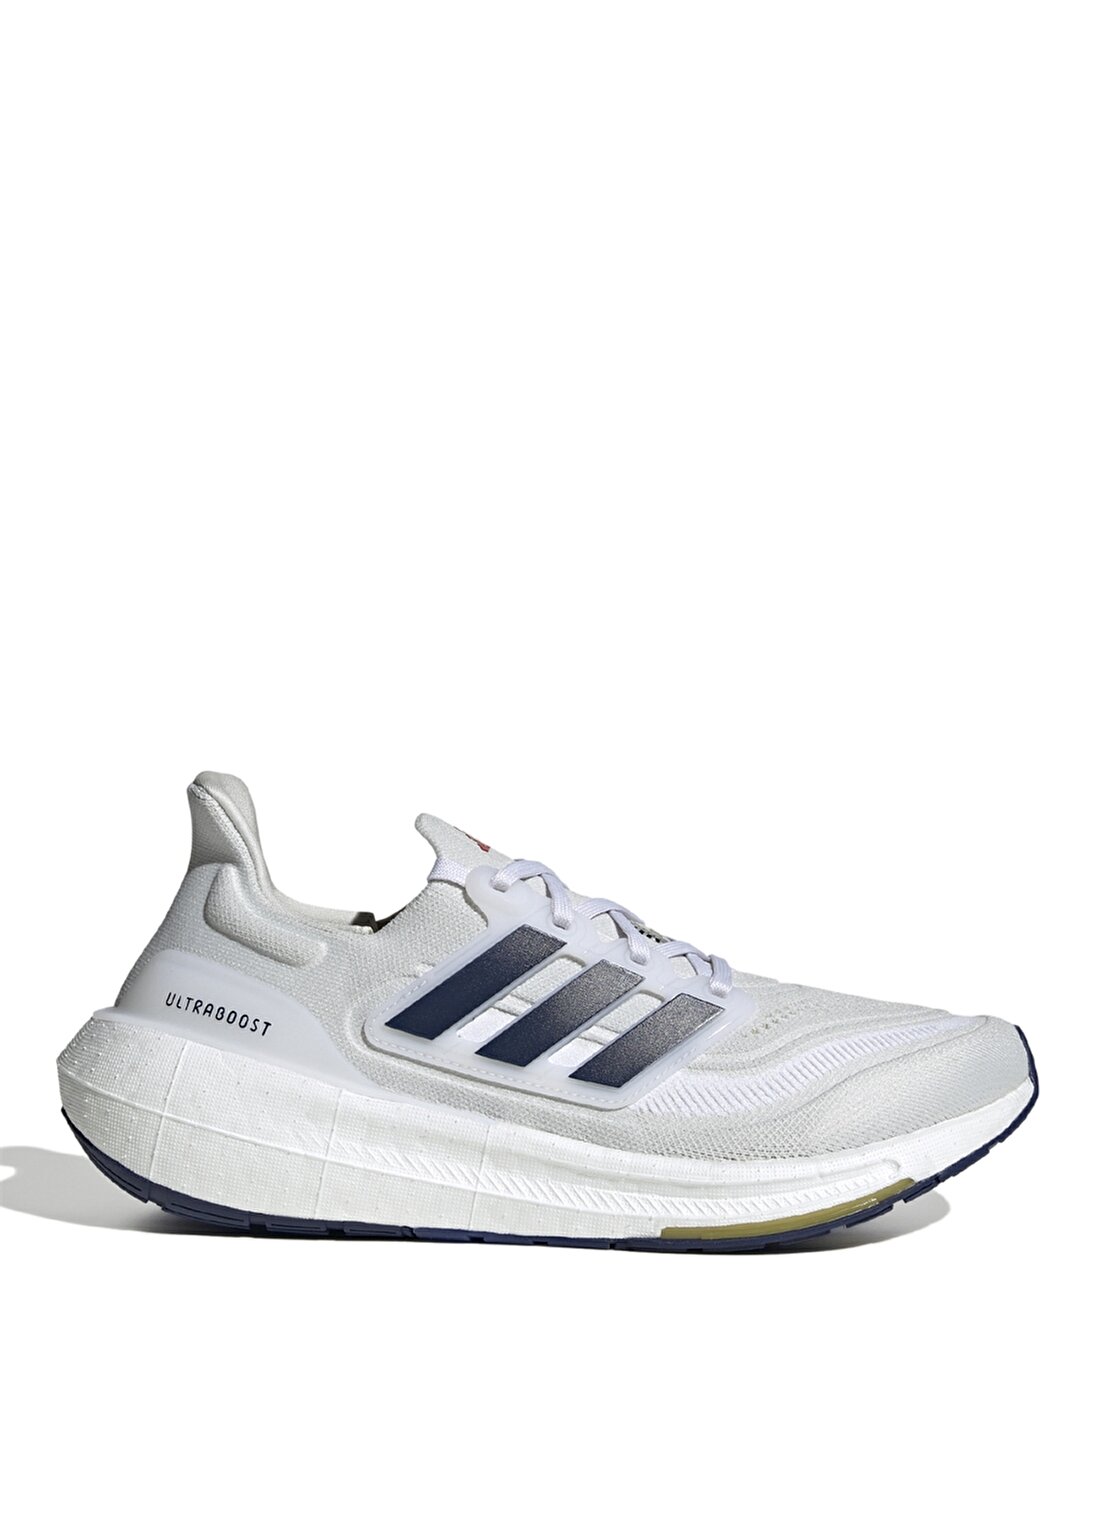 Adidas Beyaz Erkek Koşu Ayakkabısı ID3285 ULTRABOOST